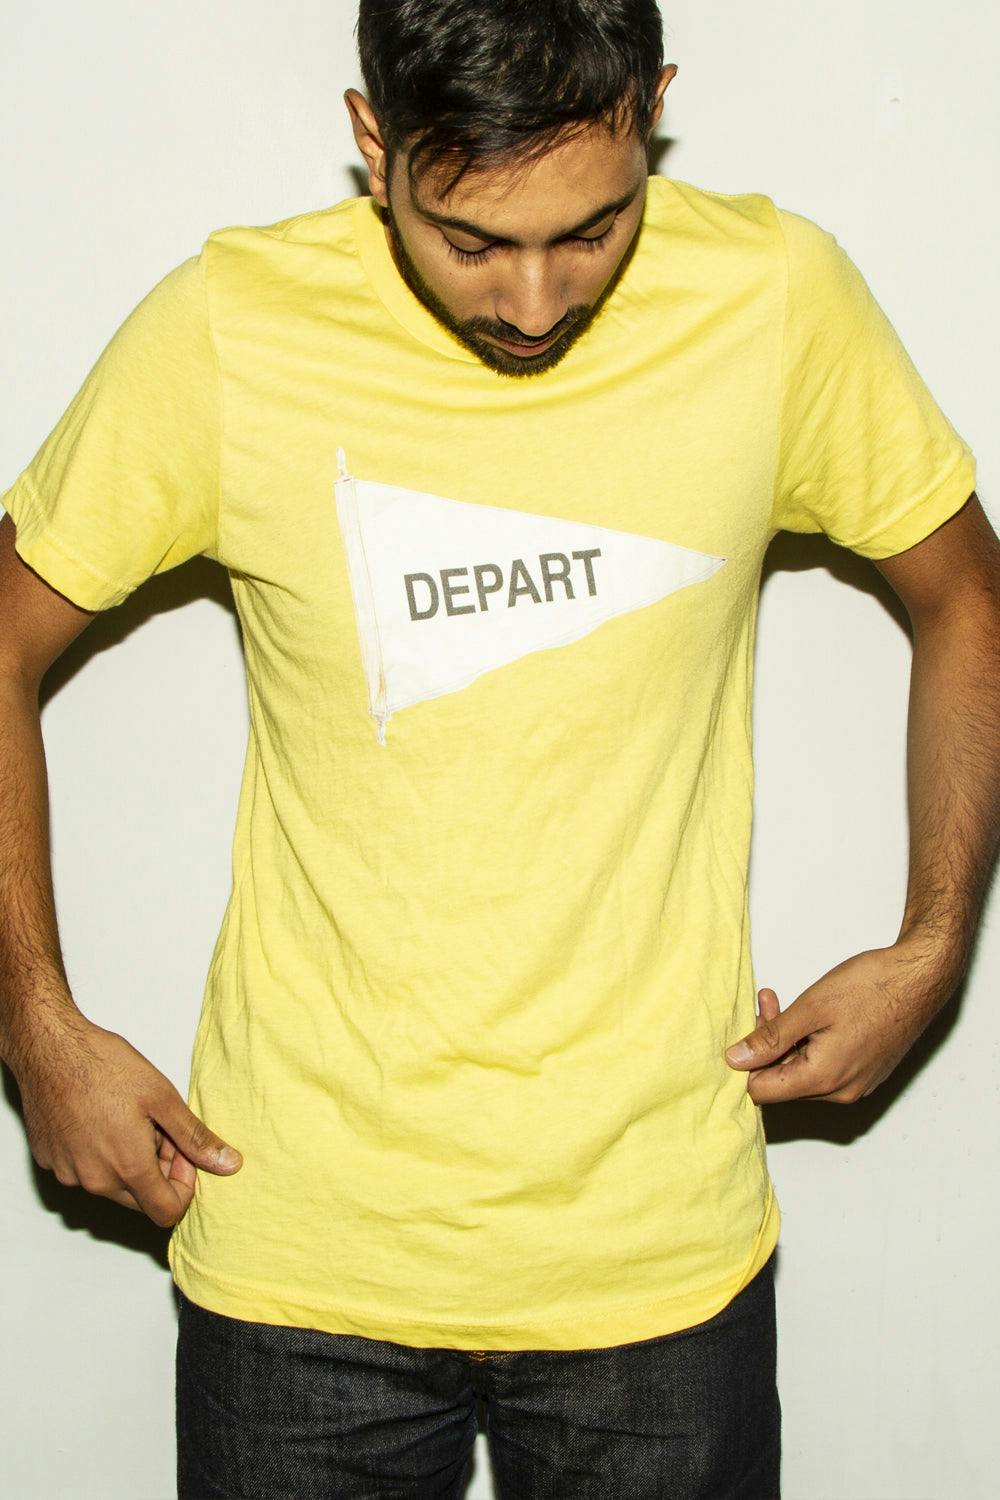 Depart Tee Yellow